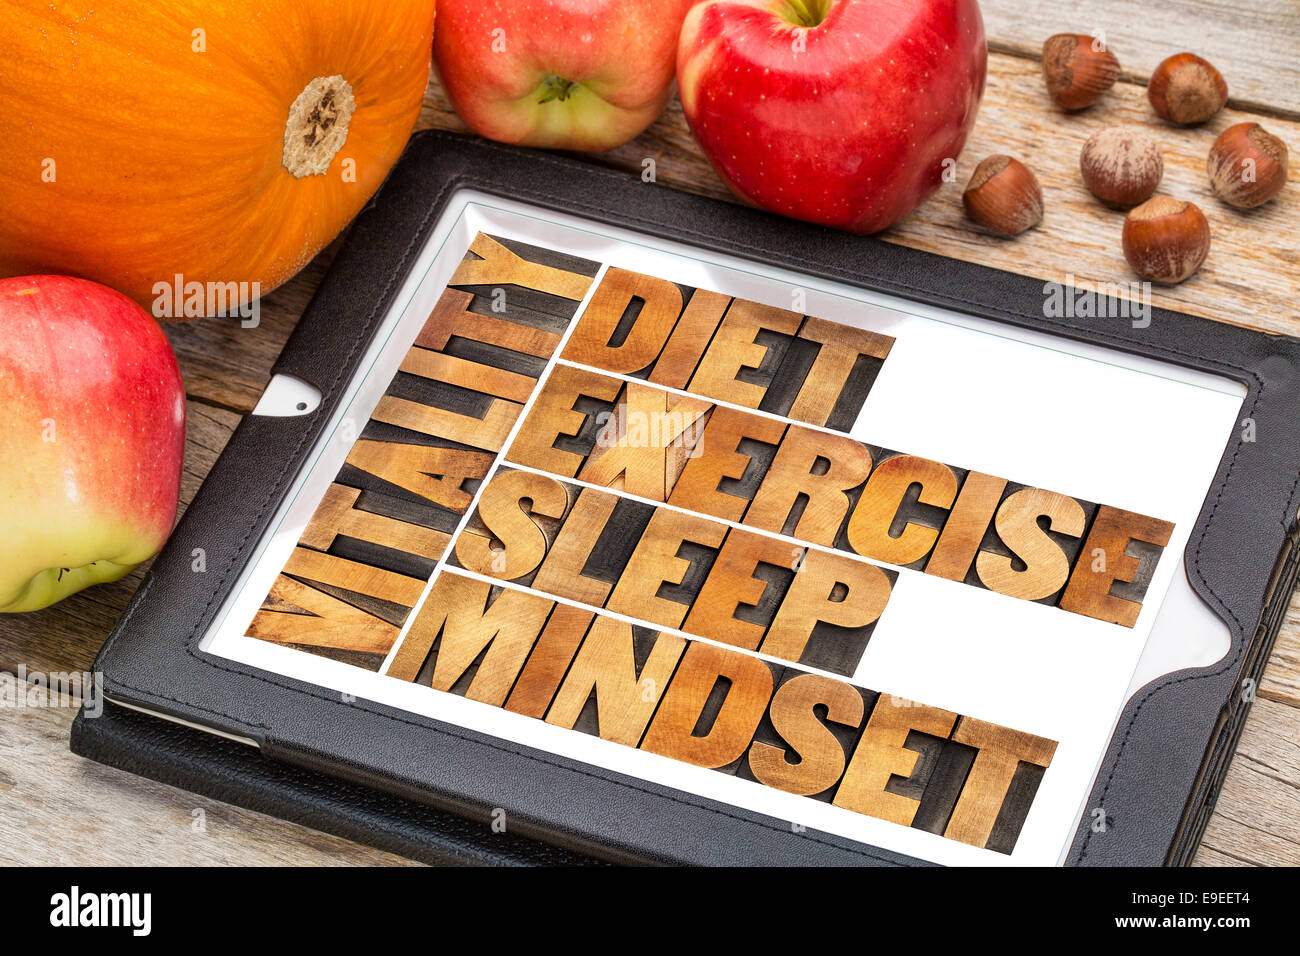 L'alimentation, le sommeil, l'exercice et d'esprit - Vitalité - concept abstrait dans la typographie vintage type de bois sur une tablette numérique avec des pommes Banque D'Images